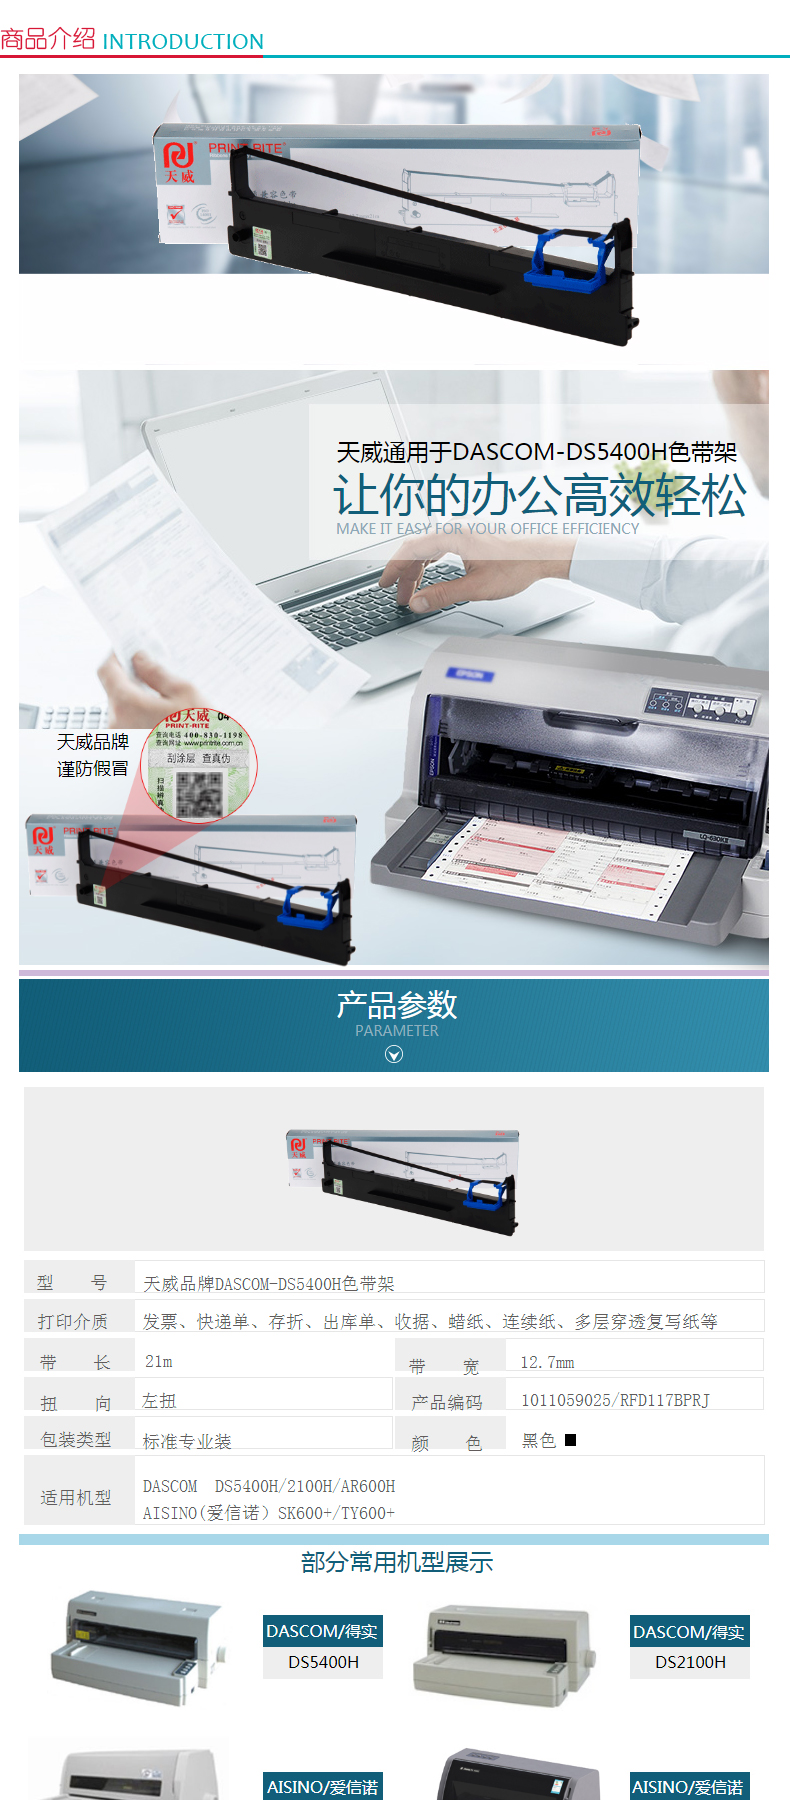 天威 PRINT-RITE 色带框/色带架 DS-5400H/2100H RFD117BPRJ 21m*12.7mm (黑色) (10盒起订)